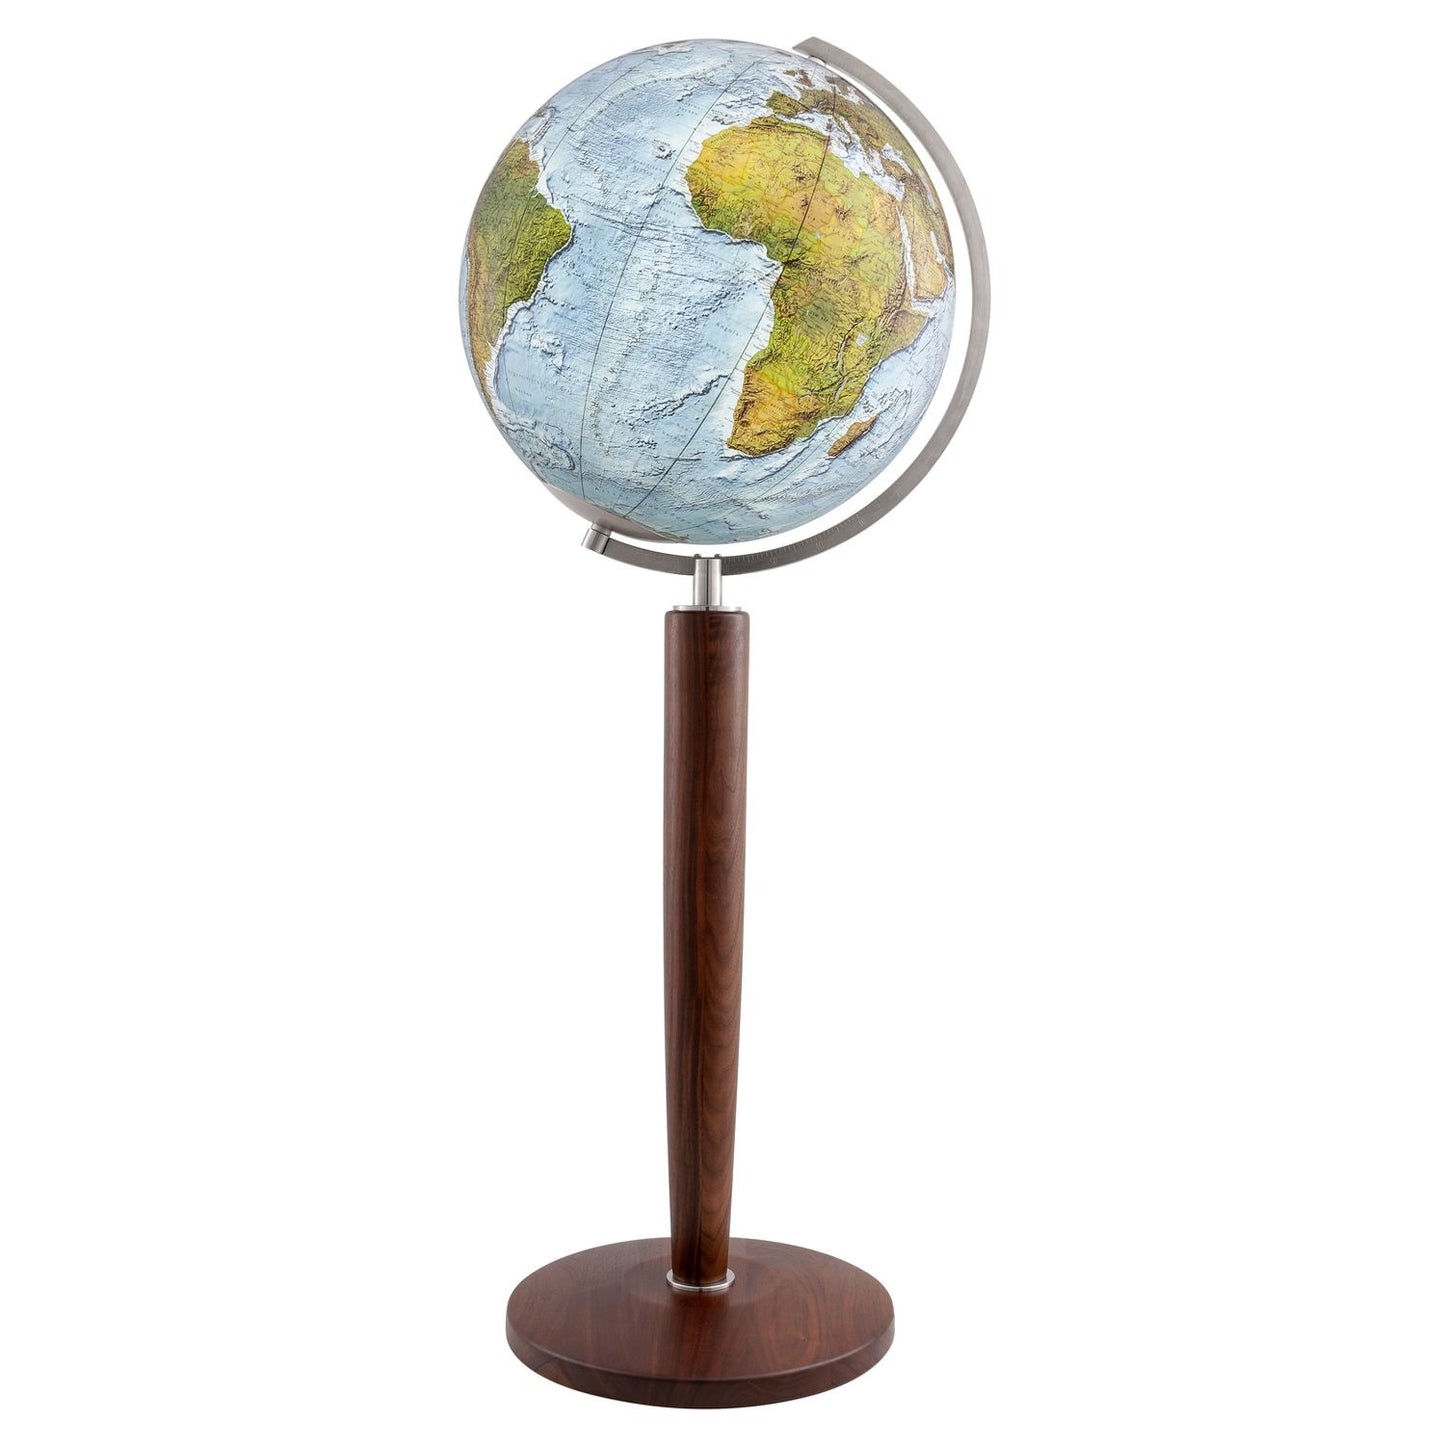 Columbus DUO ALBA globe sur pied Khan D 51 cm cristal verre et noyer, anglais